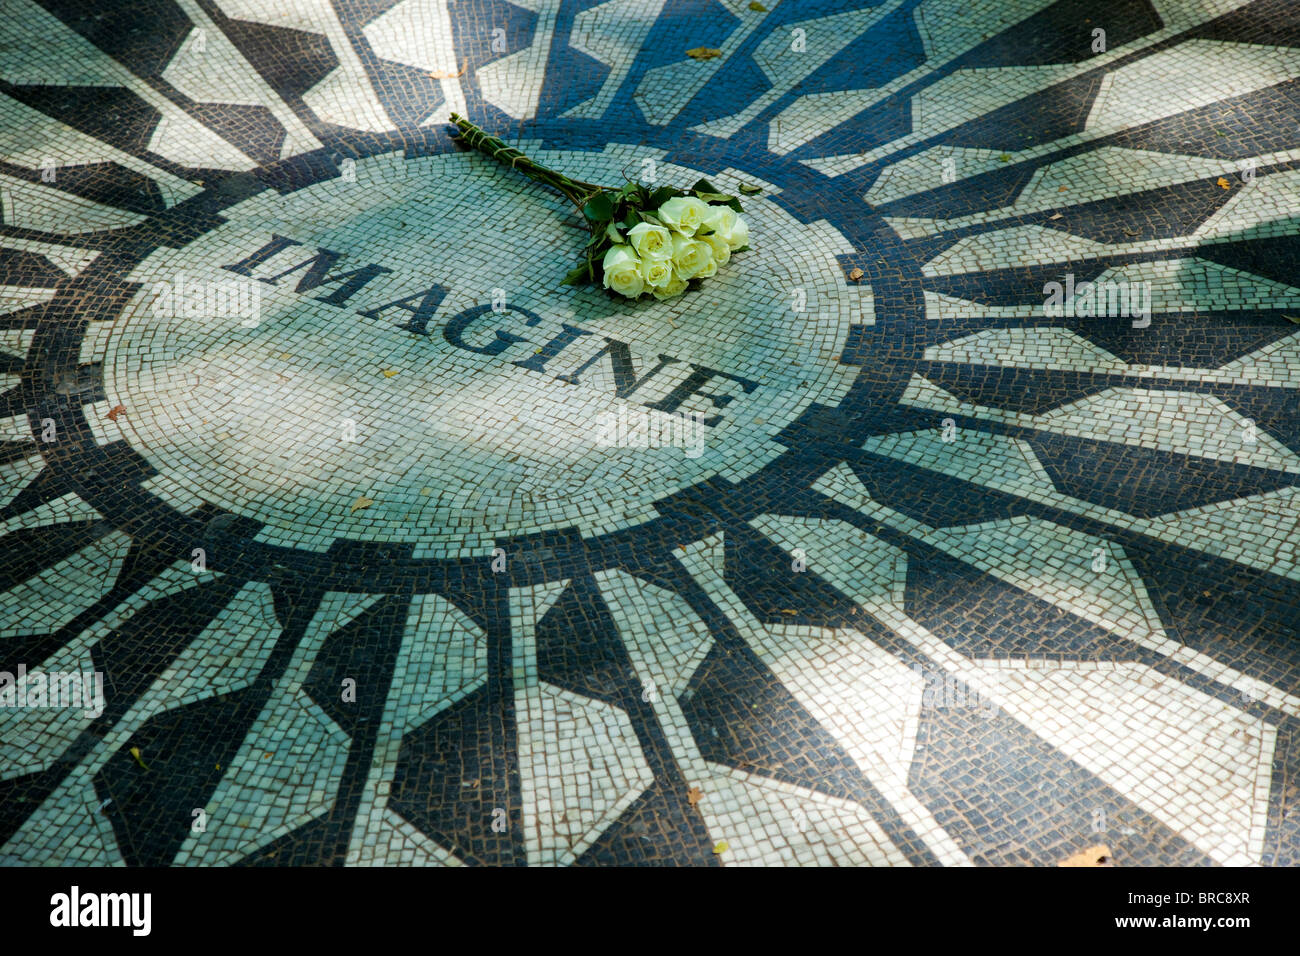 Rose bianche poste su 'Imagine' - John Lennon Memorial mosaico in Strawberry Fields all'interno del Central Park di New York City STATI UNITI D'AMERICA Foto Stock